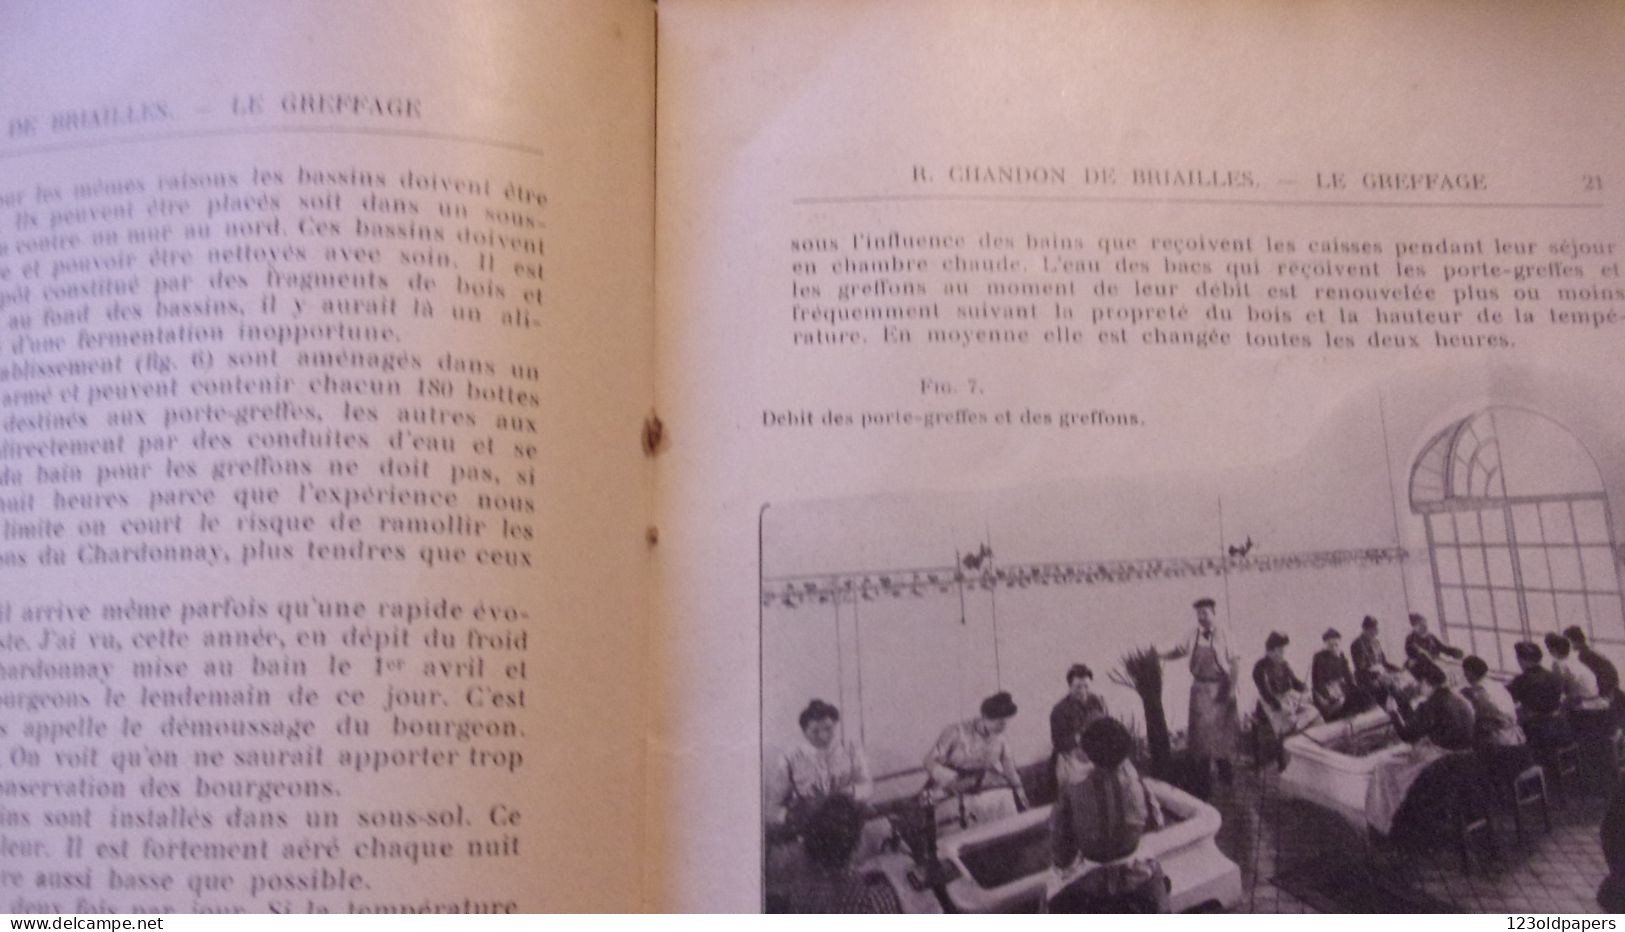 Le greffage à l'Etablissement de Viticulture - Maison Moët et Chandon 1935 - Raoul Chandon de Briallles CHAMPAGNE REIMS